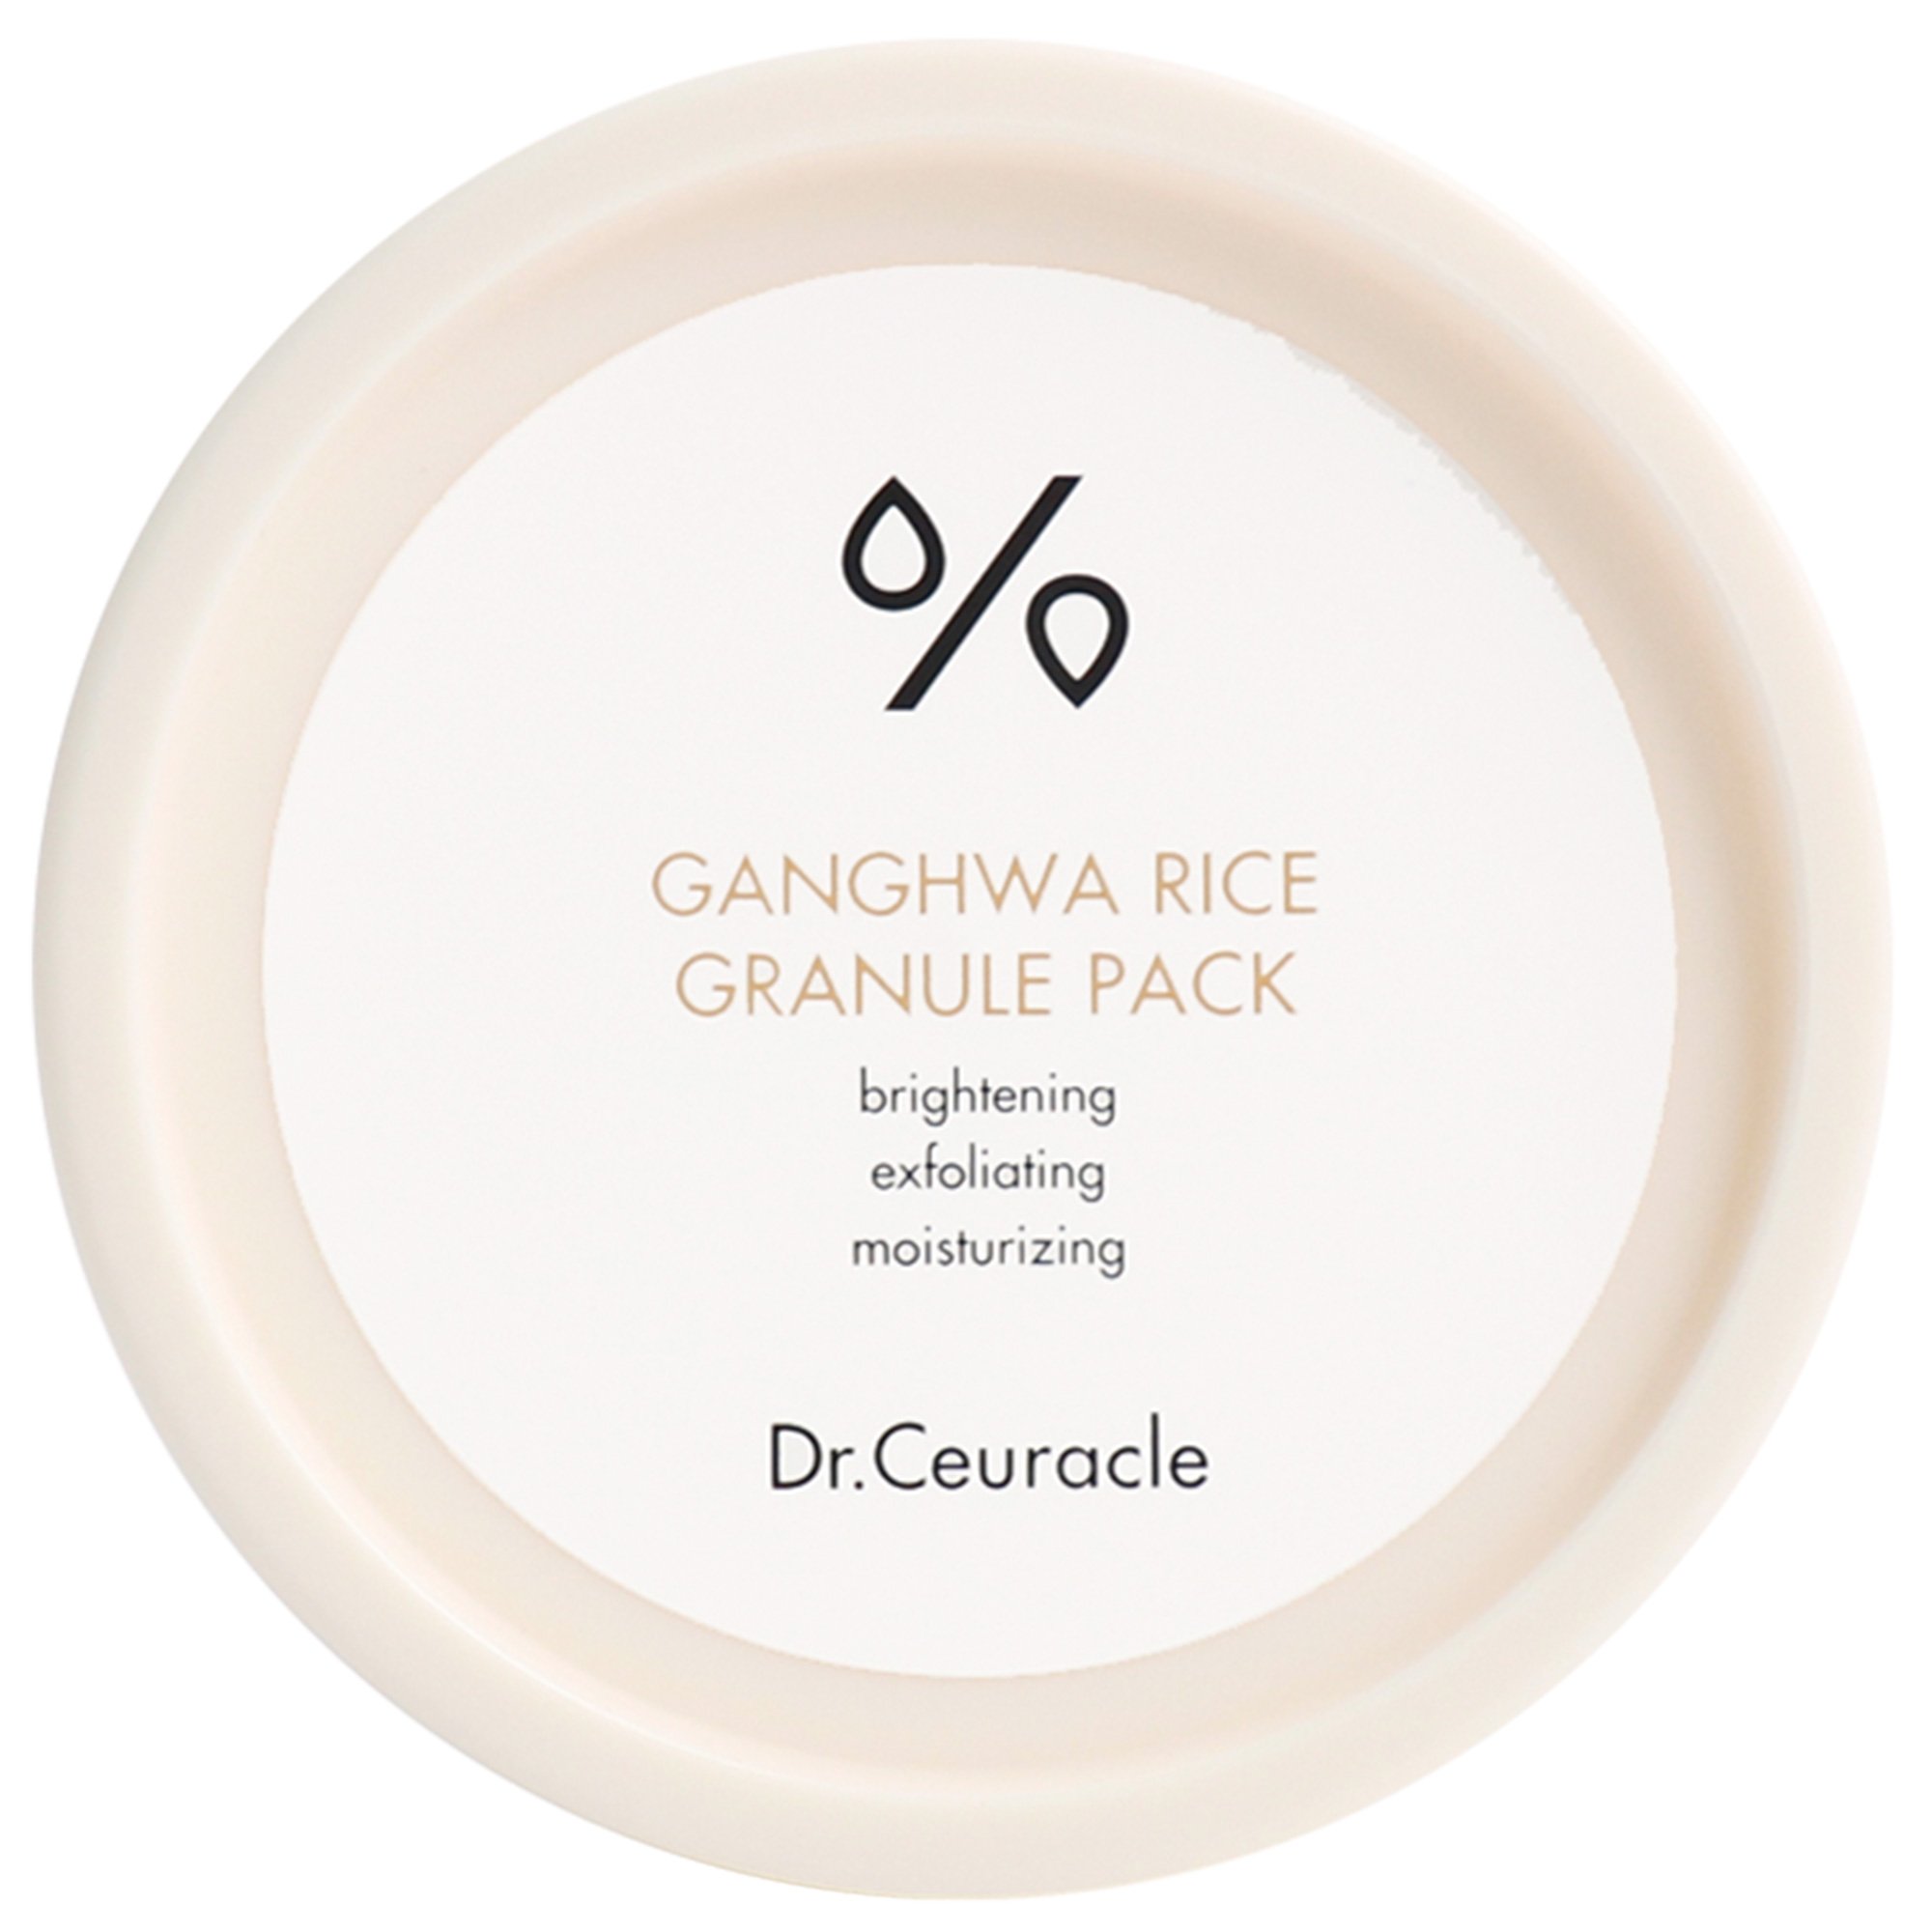 Купить Dr Ceuracle, Рисовая маска для лица Ganghwa Rice Granule Pack, 115 г, Dr. Ceuracle